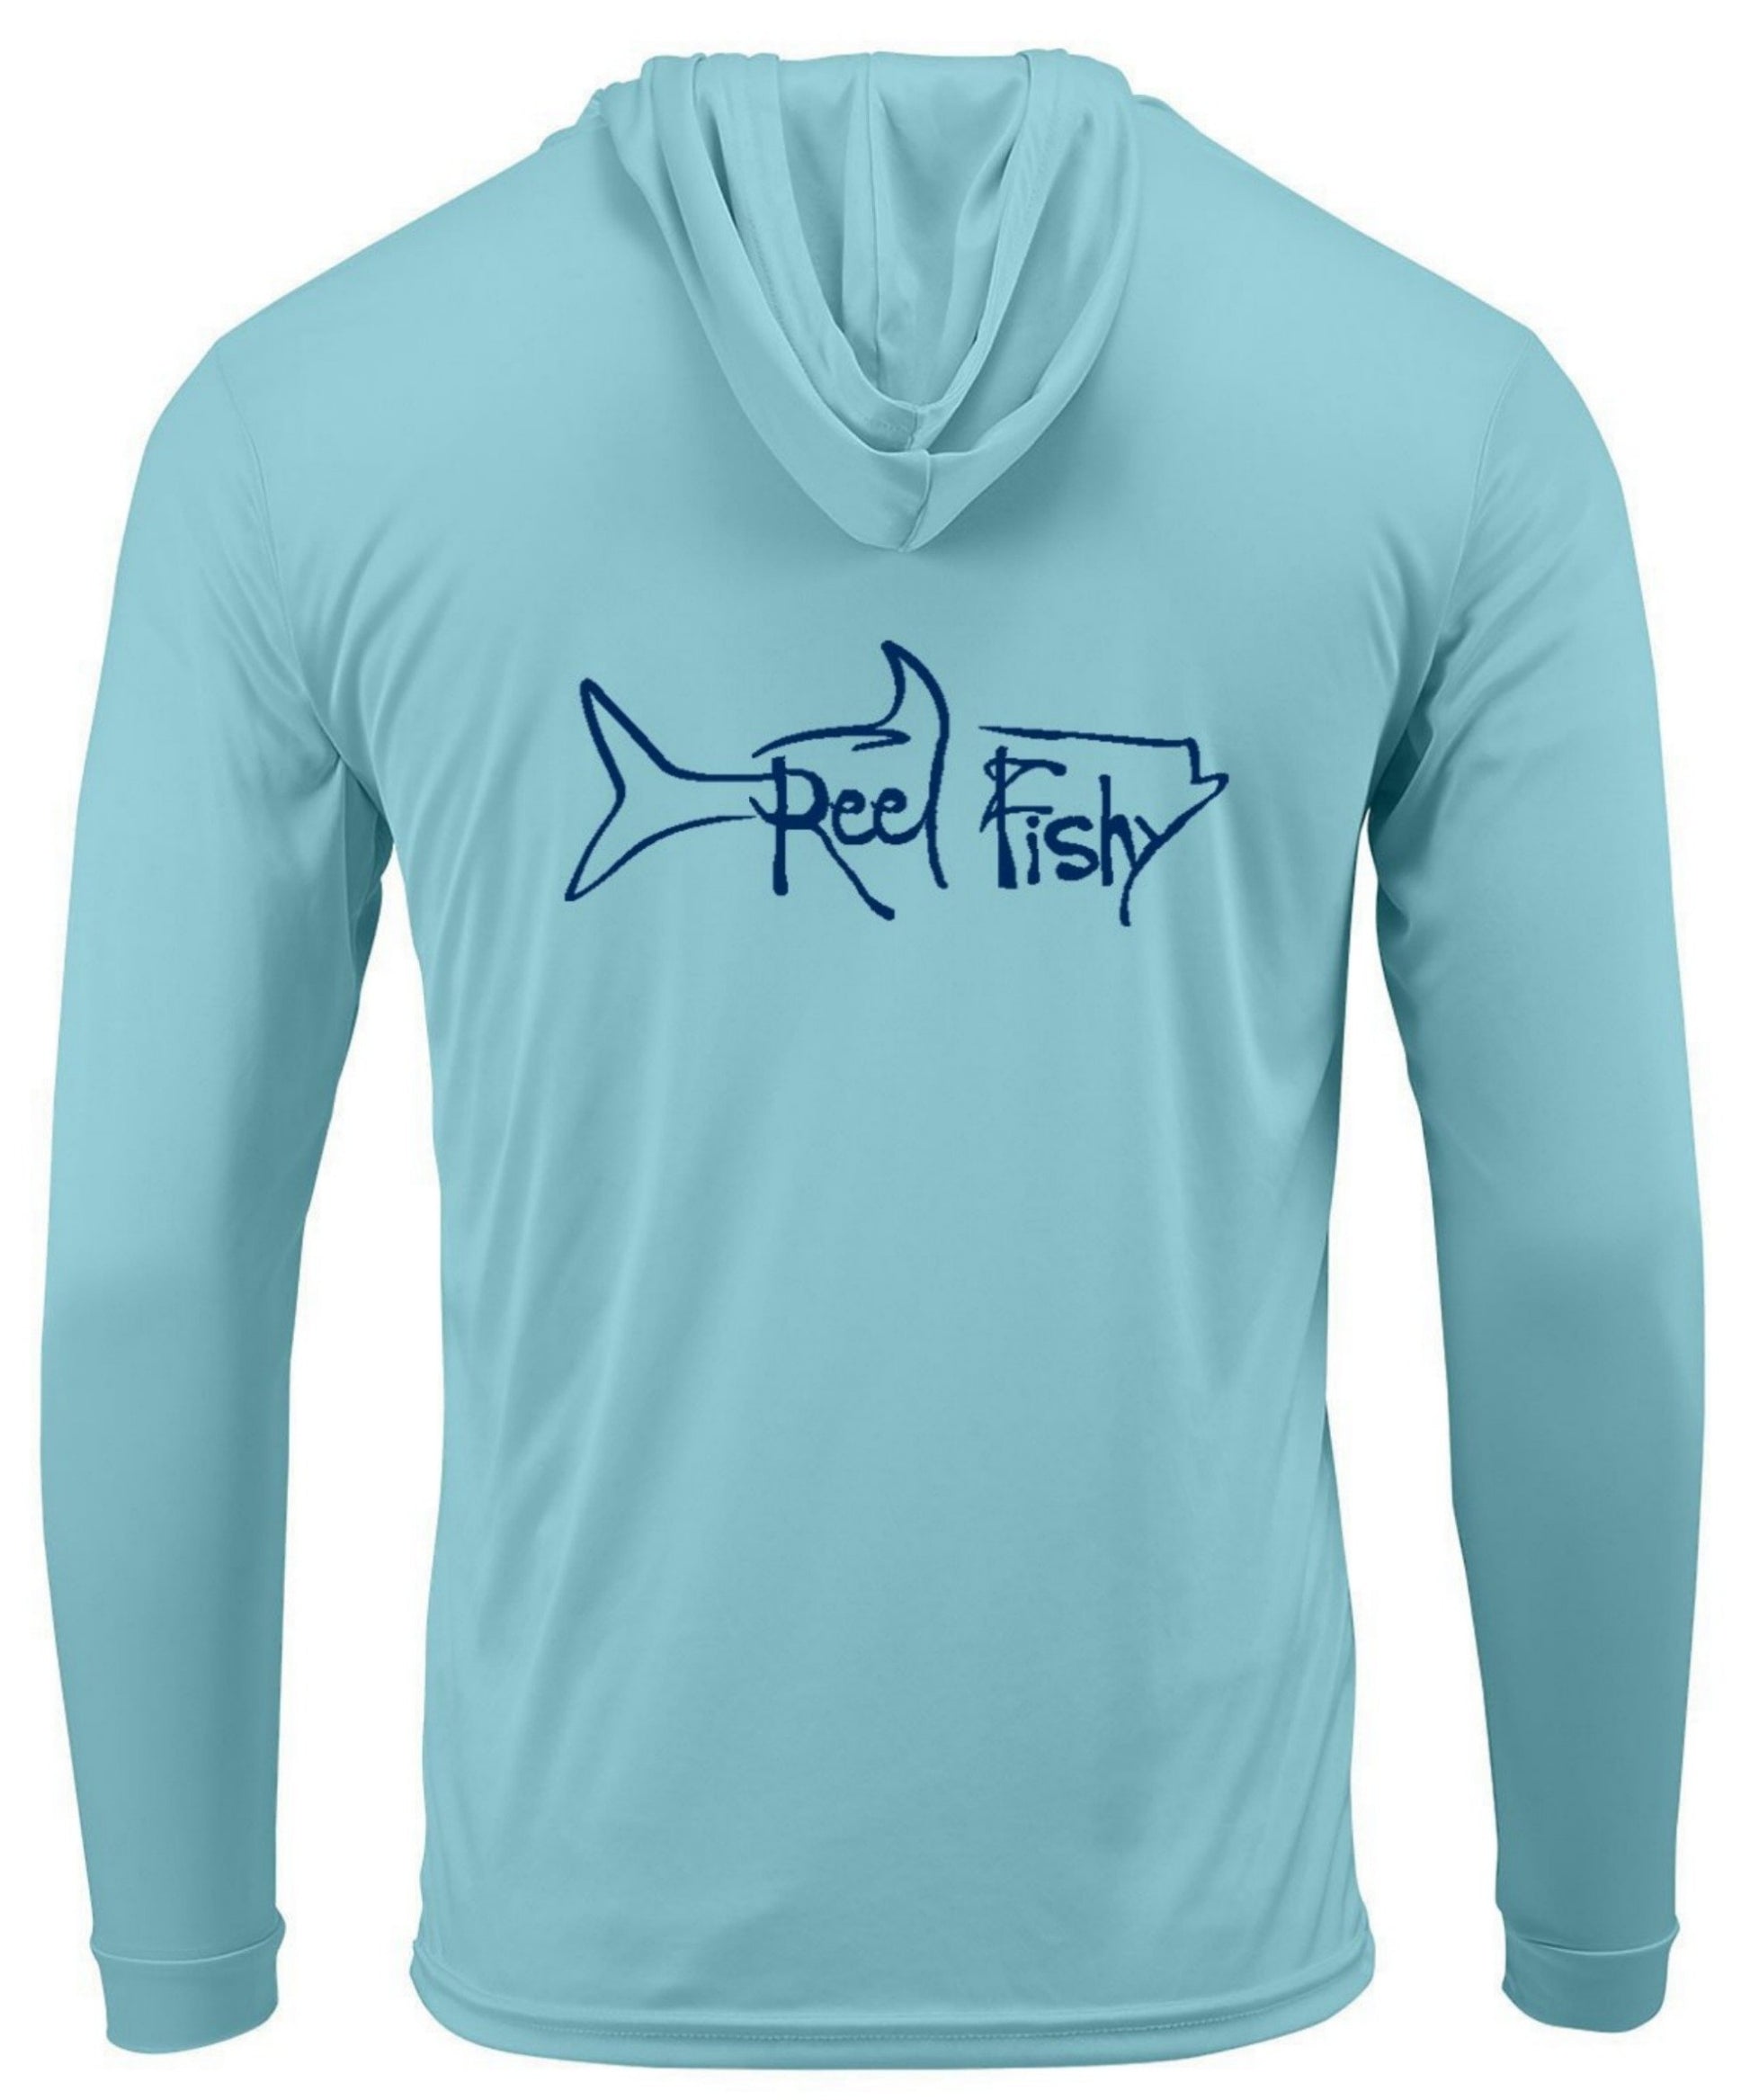 Tarpon Performance Hoodie Fishing Shirts, 50+Upf Sun Protection - Reel Fishy Apparel 2XL / Aqua Blue Hoodie L/S - unisex